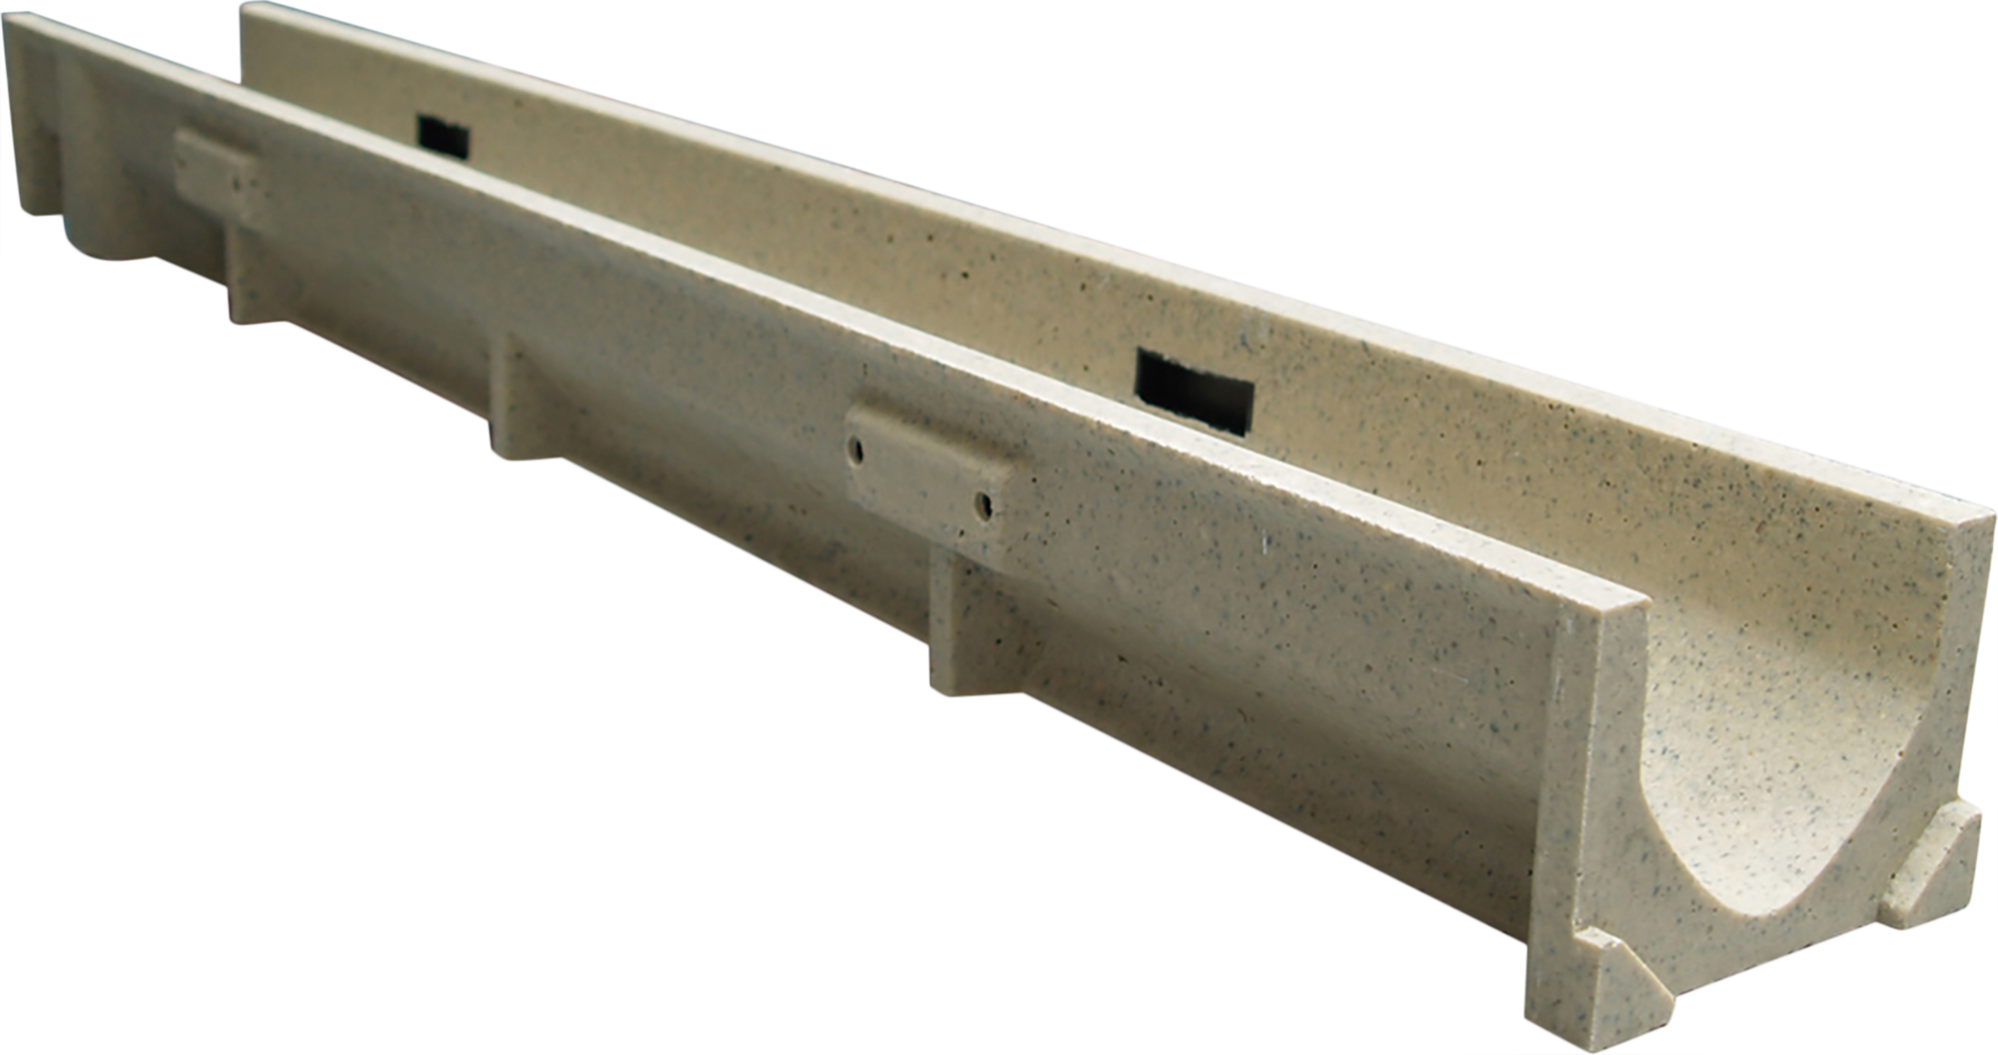 Precursor suspender carga Canaleta de desagüe hormigón polímero gris 13x10 cm | Leroy Merlin